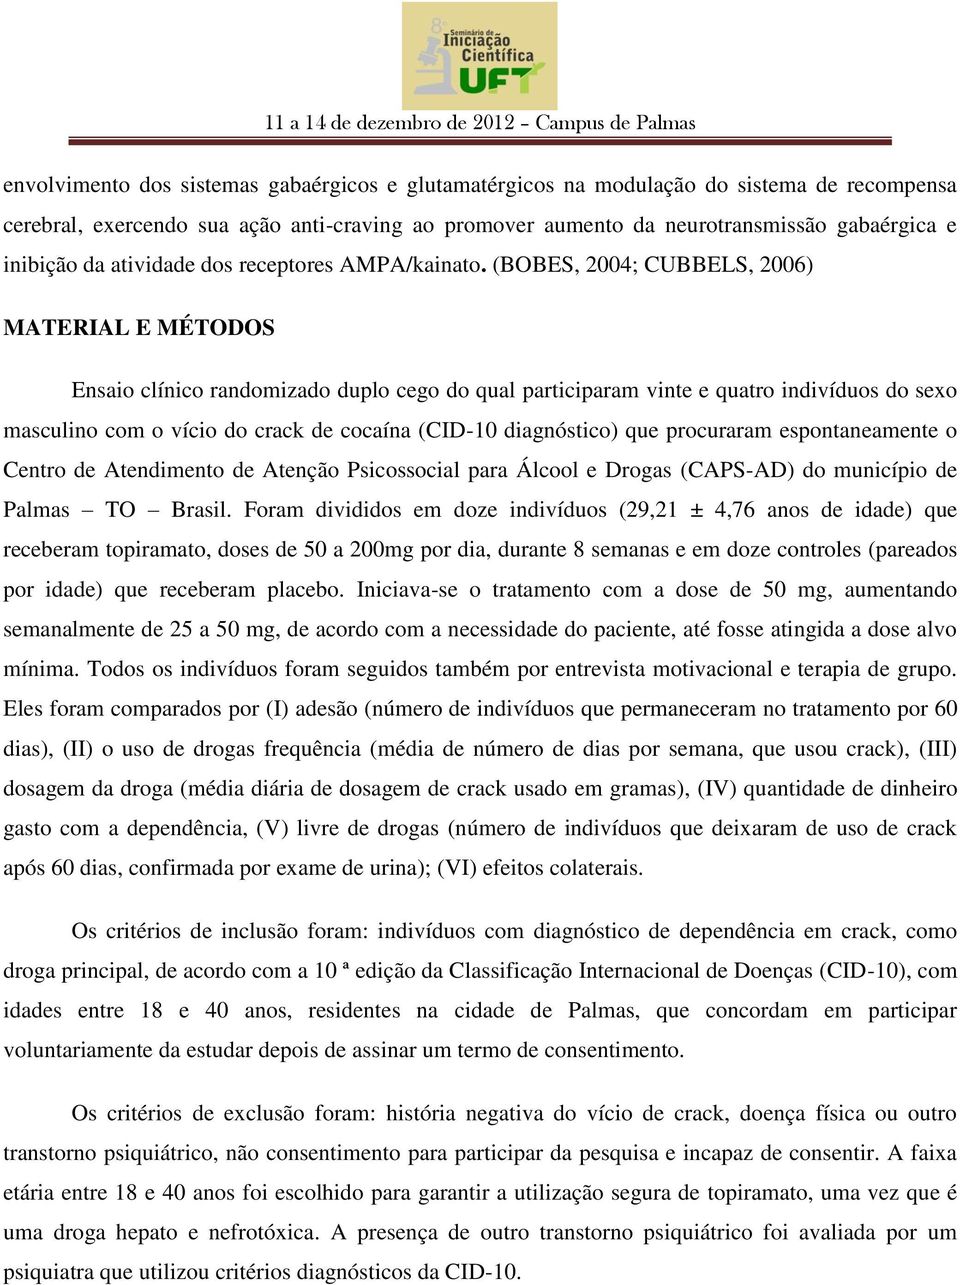 (BOBES, 2004; CUBBELS, 2006) MATERIAL E MÉTODOS Ensaio clínico randomizado duplo cego do qual participaram vinte e quatro indivíduos do sexo masculino com o vício do crack de cocaína (CID-10